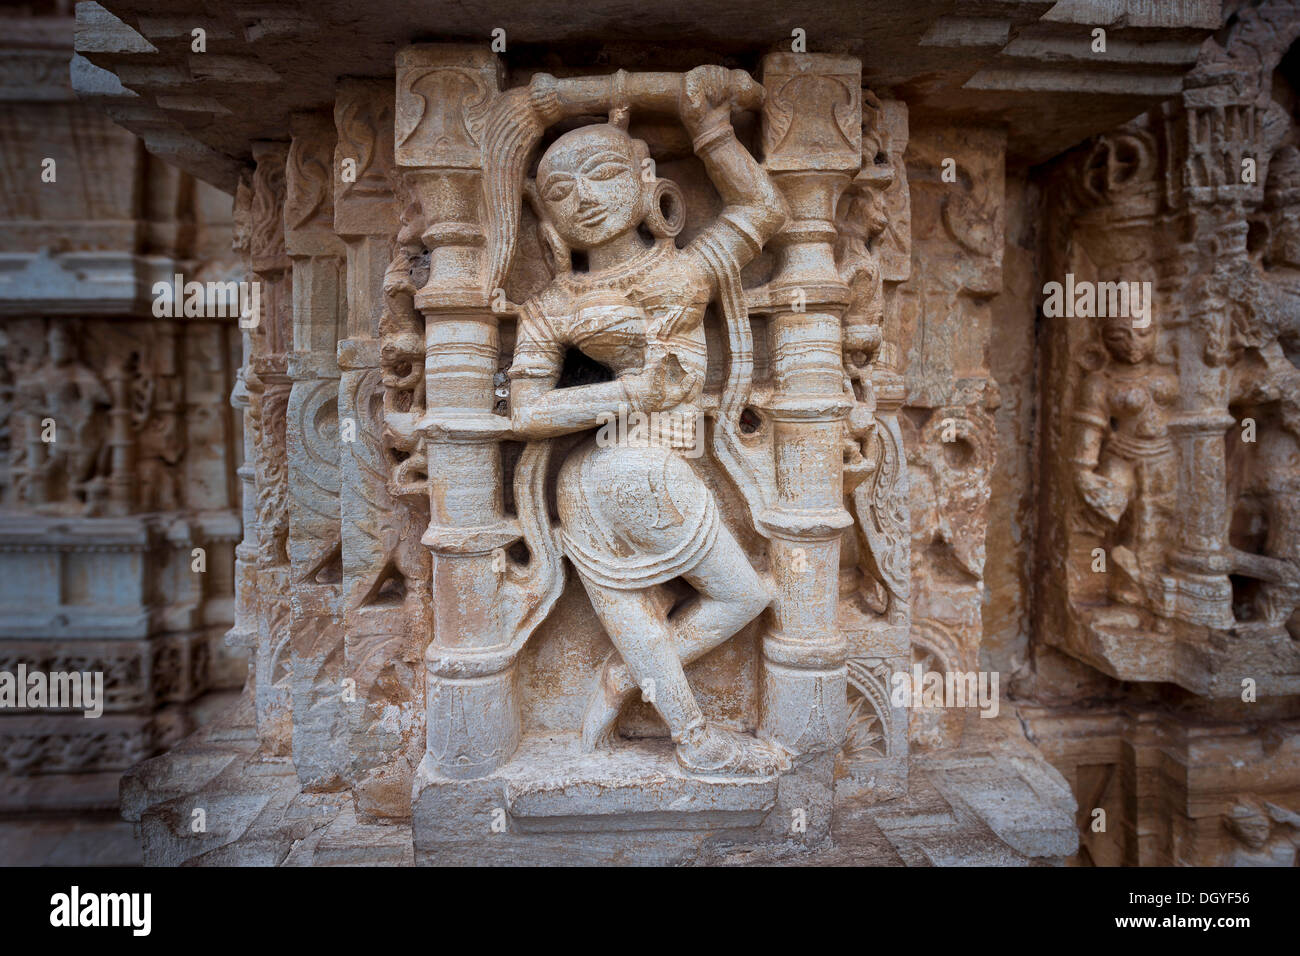 Weibliche Steinskulptur, Vijaya Stambha Sieg Turm, Chittorgarh Fort, Chittorgarh, Rajasthan, Indien Stockfoto